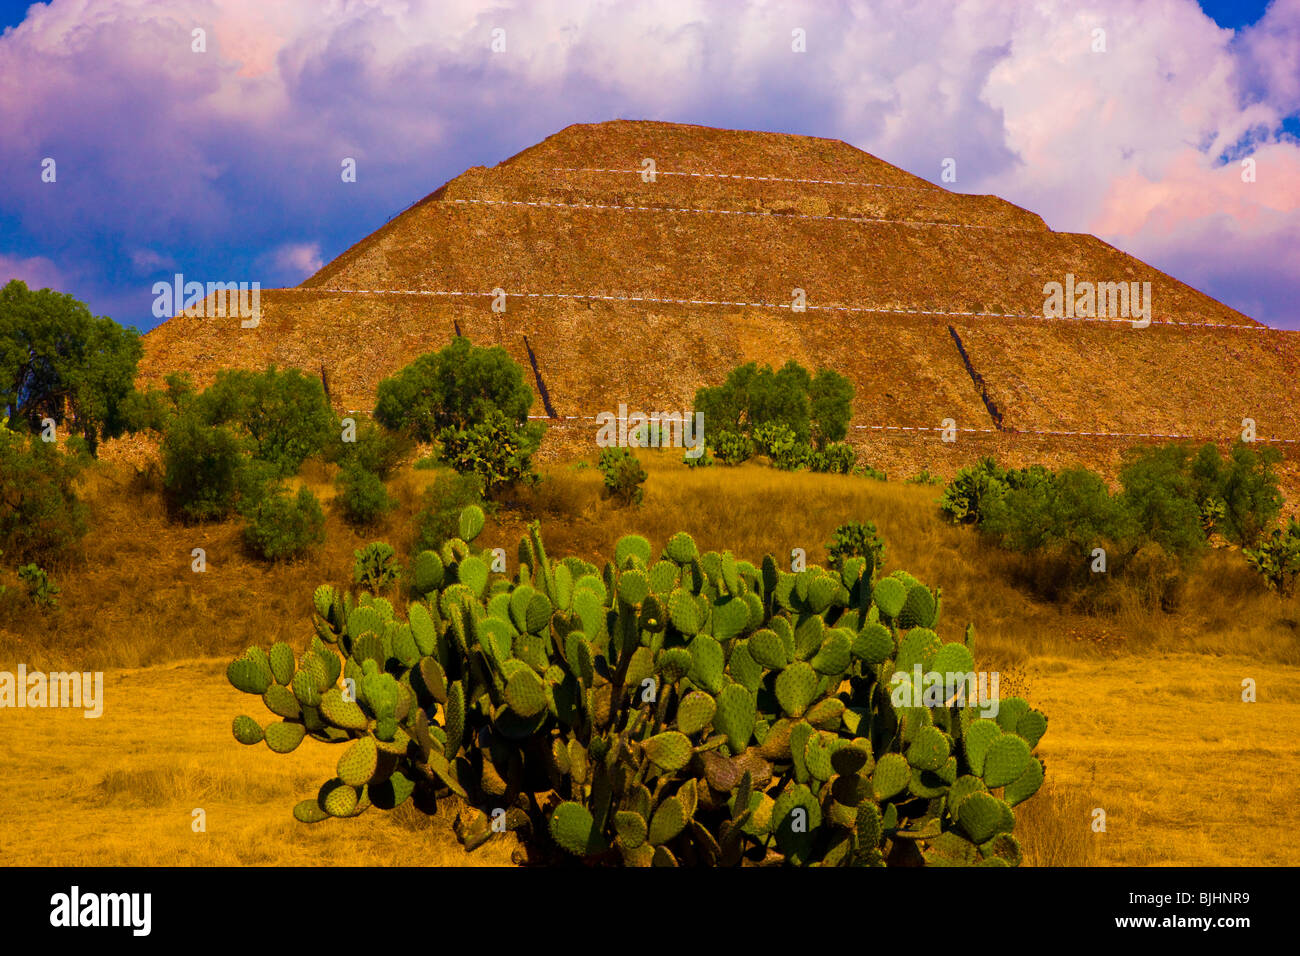 Il Tempio del Sole, Teotihuacan, piramide, Messico, oltre 70 metri di altezza, la più grande del mondo di piramide, Aztec tempio costruito 100 DC Foto Stock